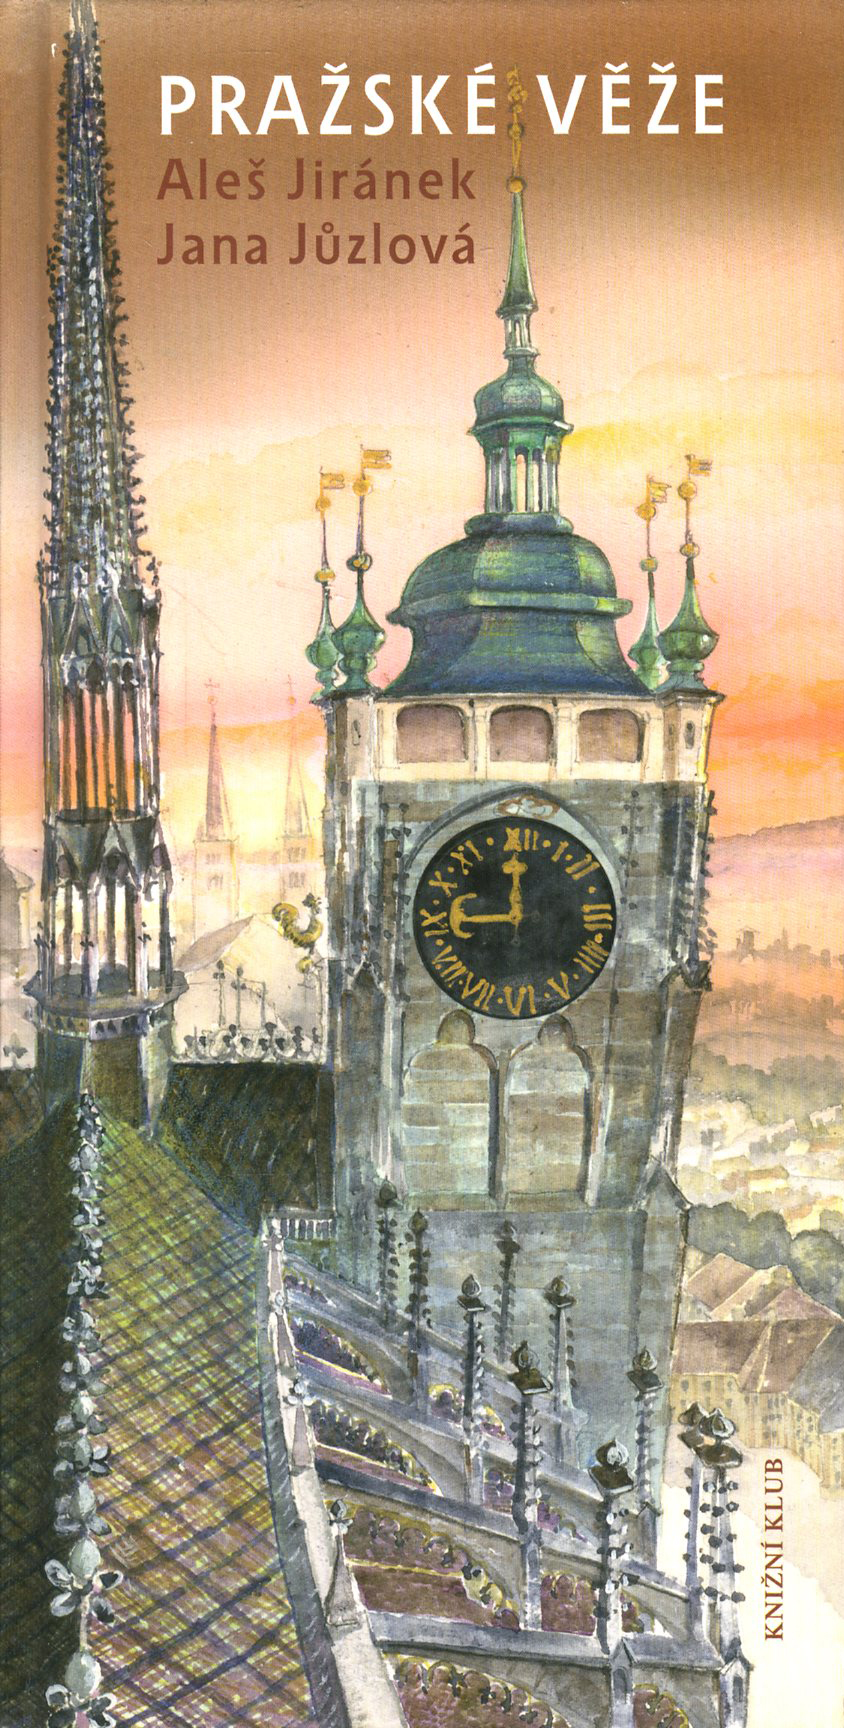 Pražské věže (Aleš Jiránek, Jana Jůzlová)